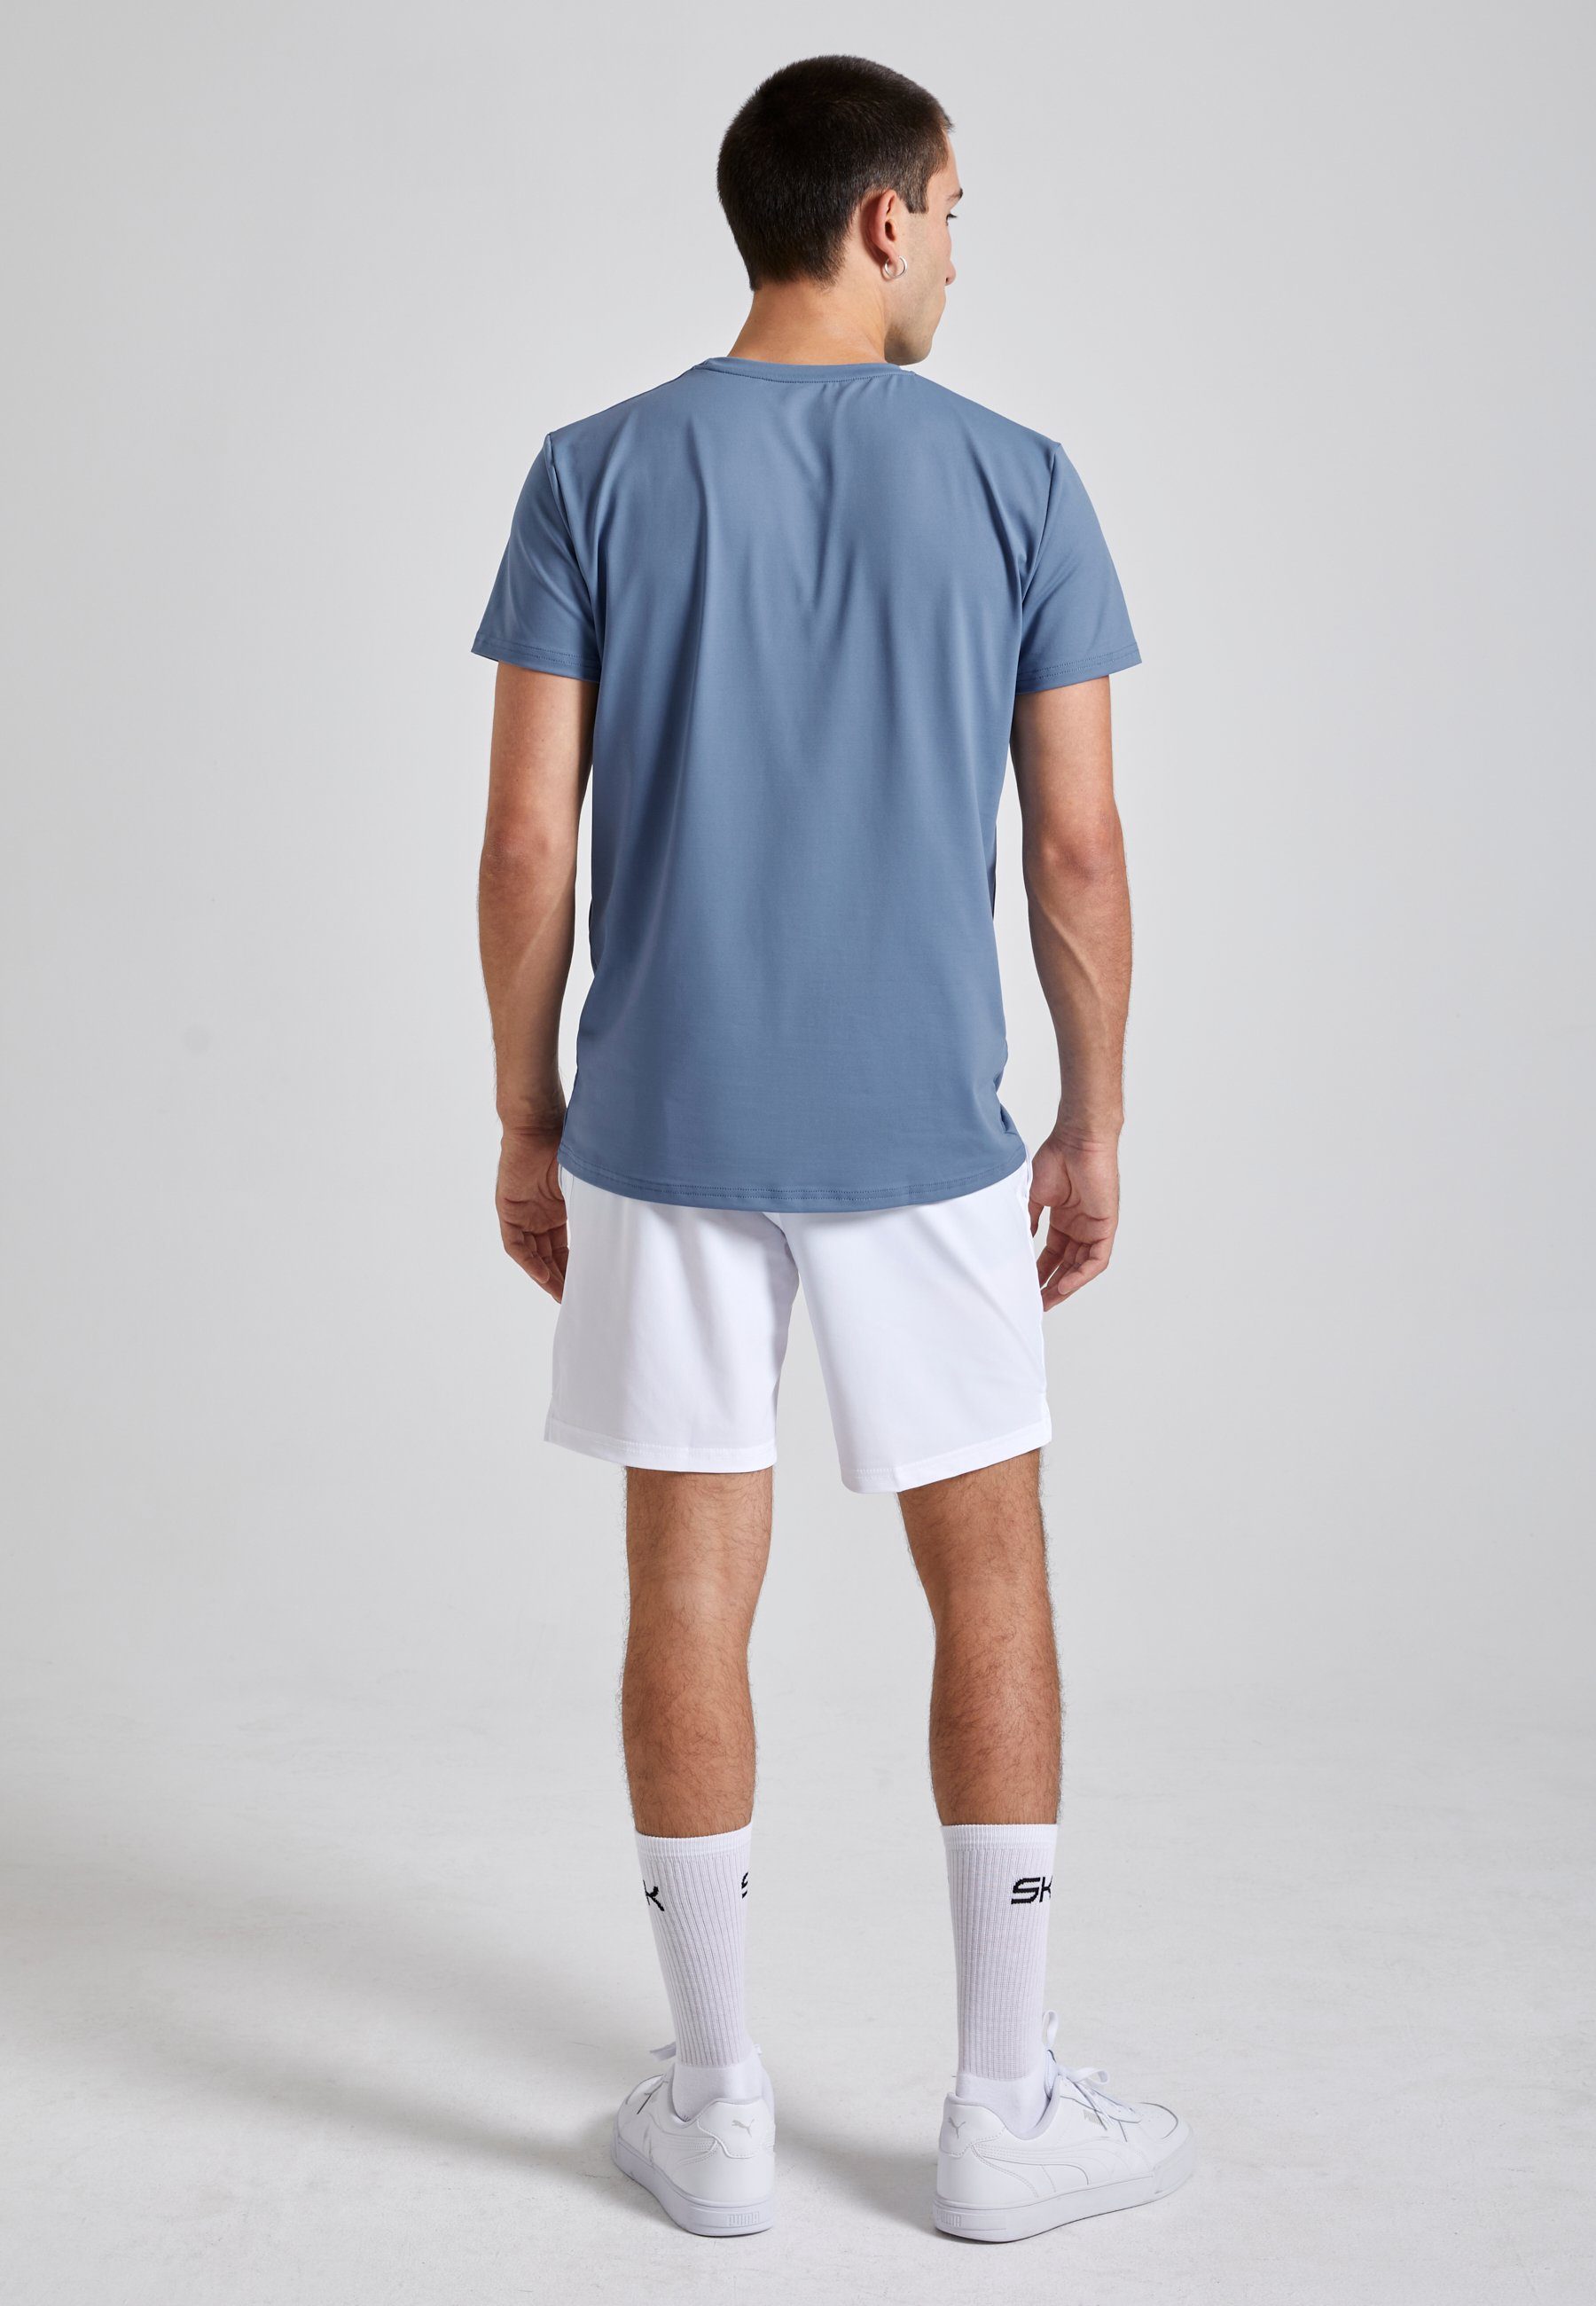 Funktionsshirt T-Shirt Jungen blau SPORTKIND Herren Rundhals grau & Tennis